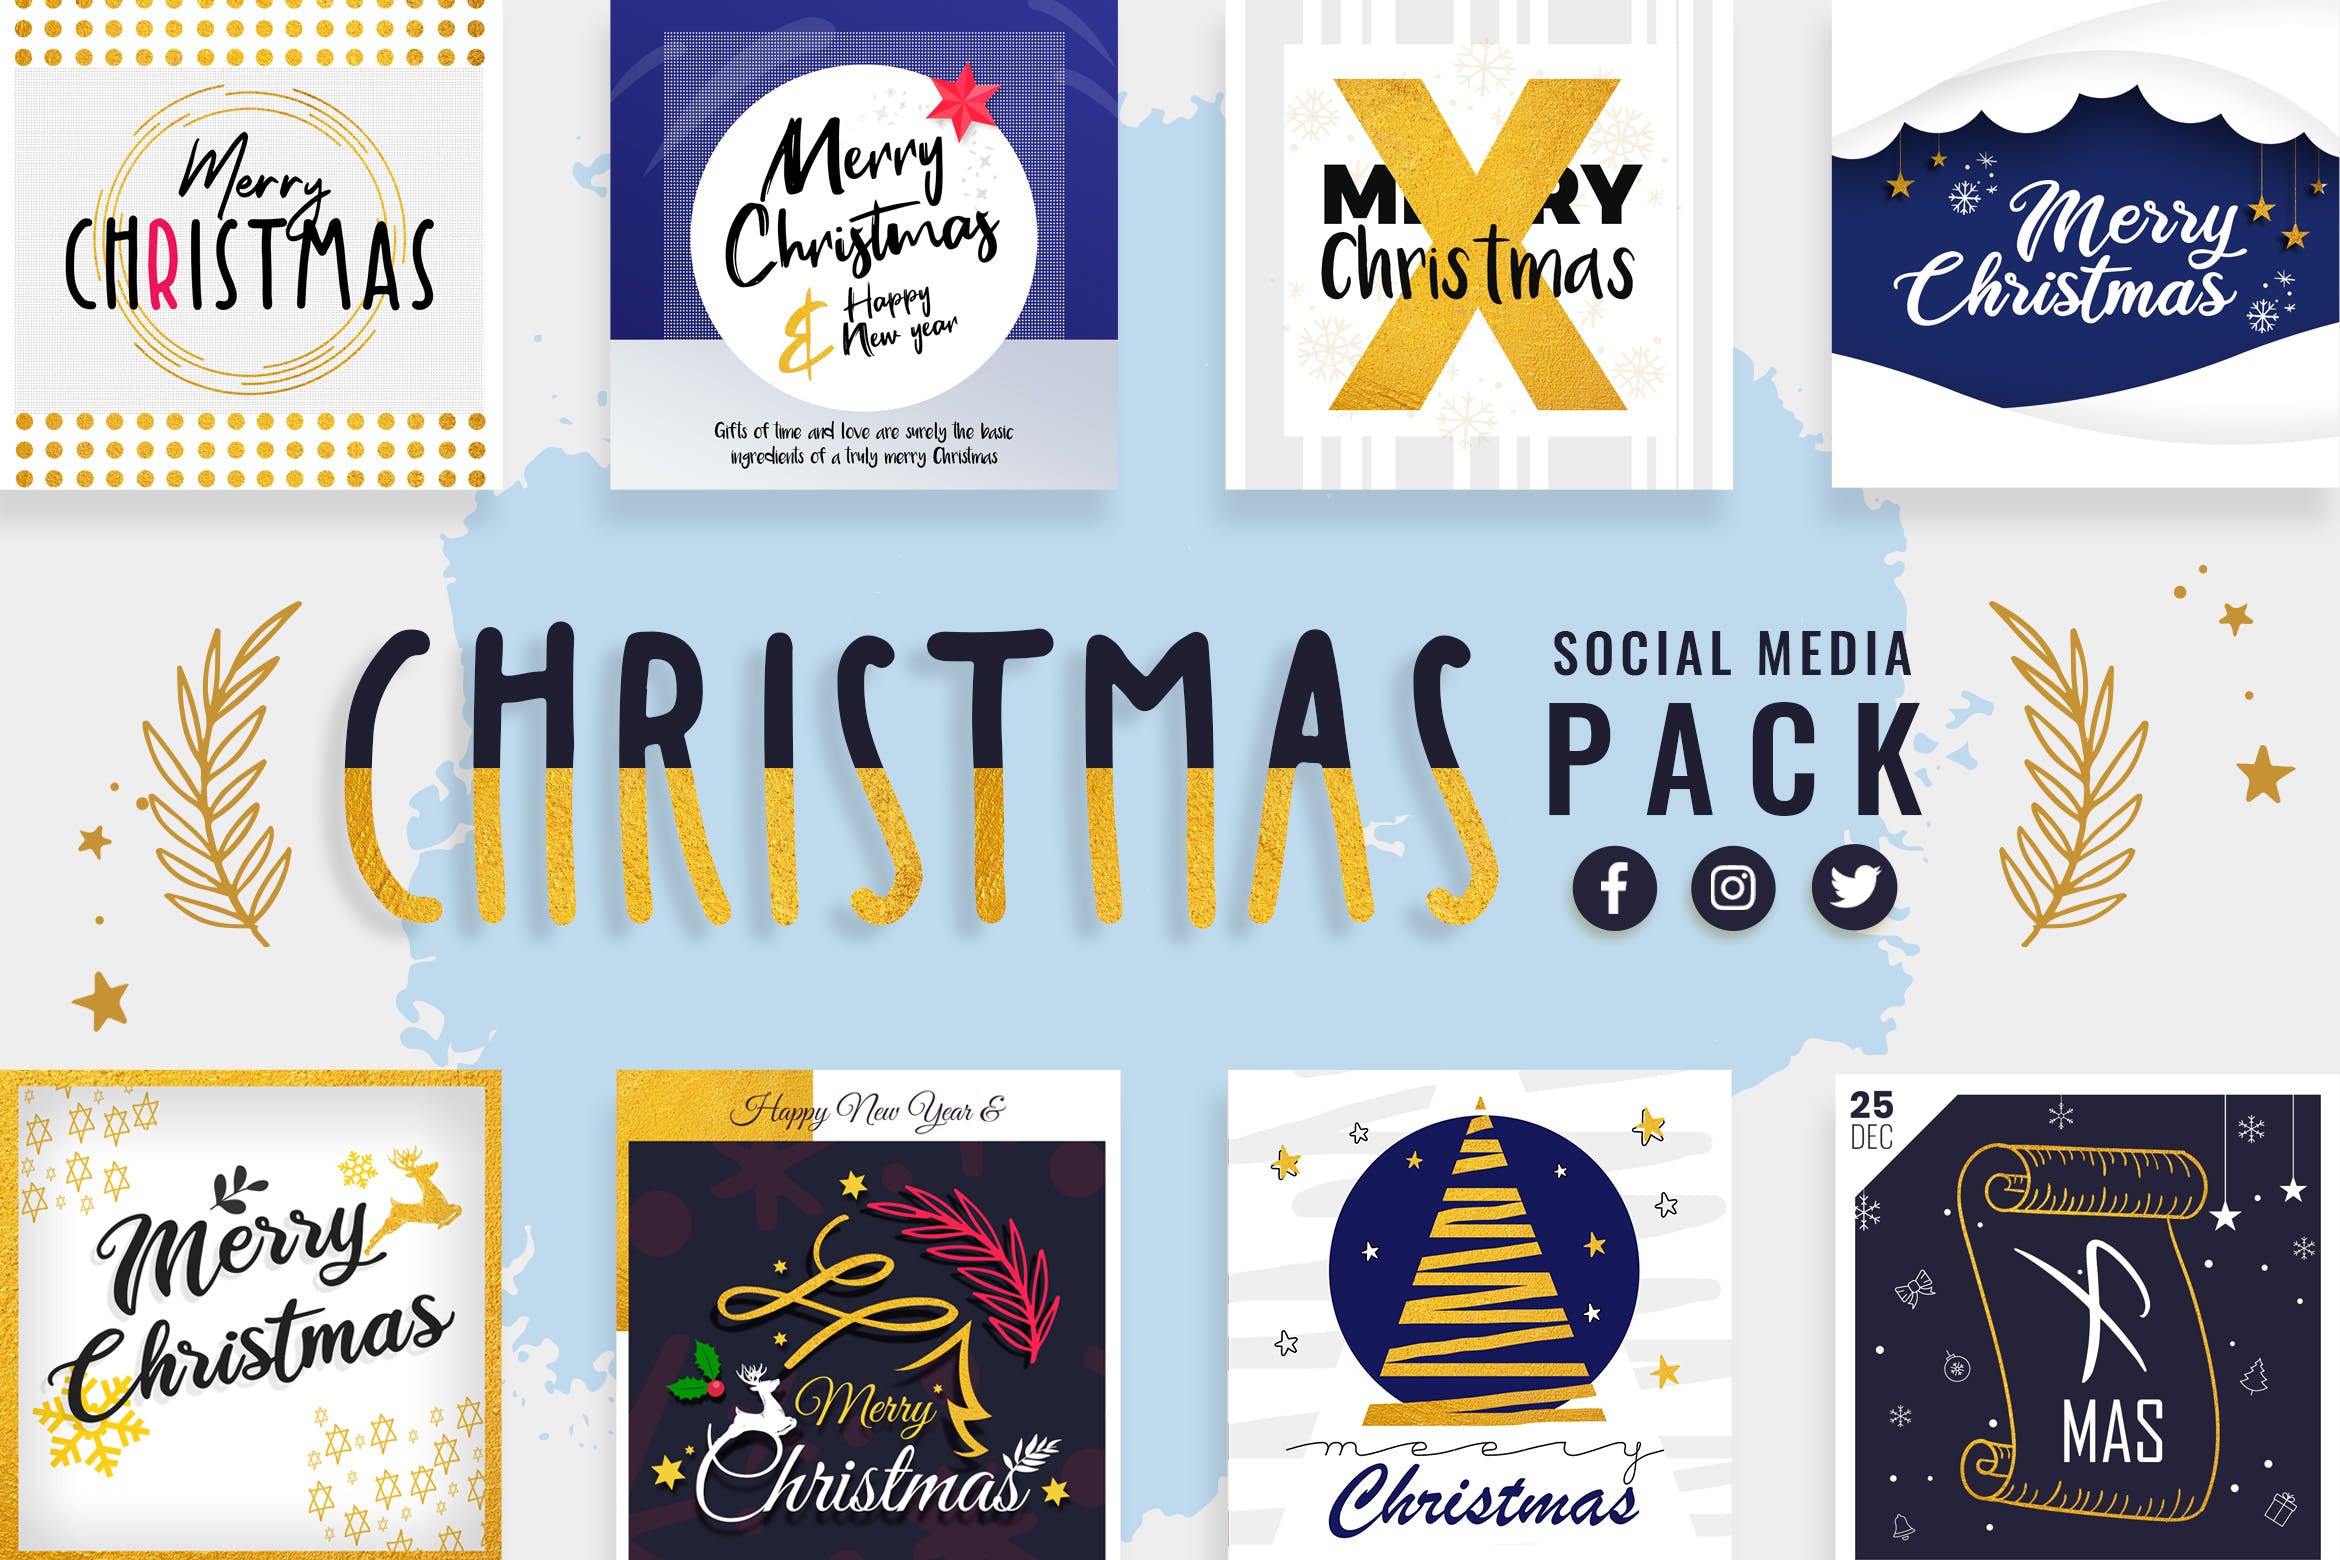 社交媒体自媒体圣诞节祝语贴图设计模板第一素材精选 Christmas Social Media Templates插图